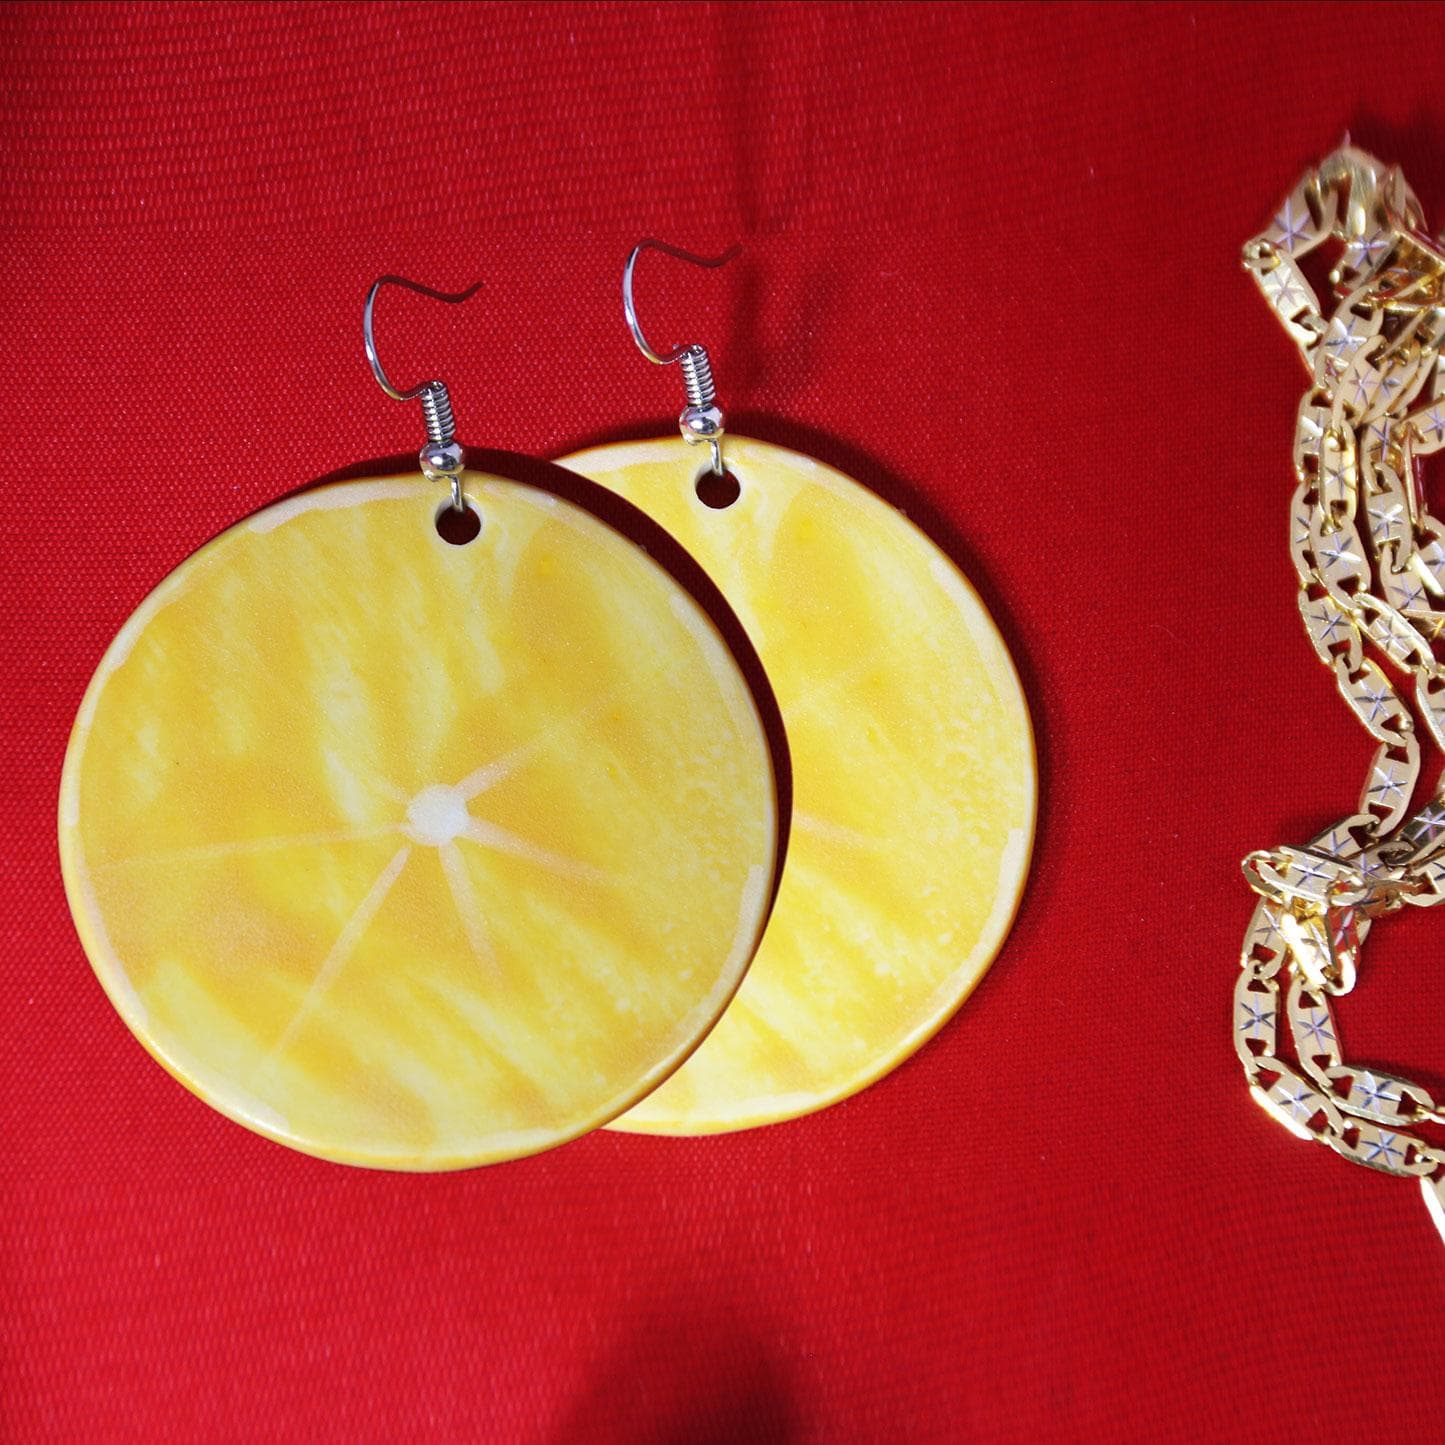 Orrange cerramics earring -Tôn vinh vẻ đẹp phụ nữ -khuyên tại gốm sứ họa tiết cam vàng vừa đẹp vừa độc đáo  sản xuất tại xưởng gốm sứ authentic bat trang